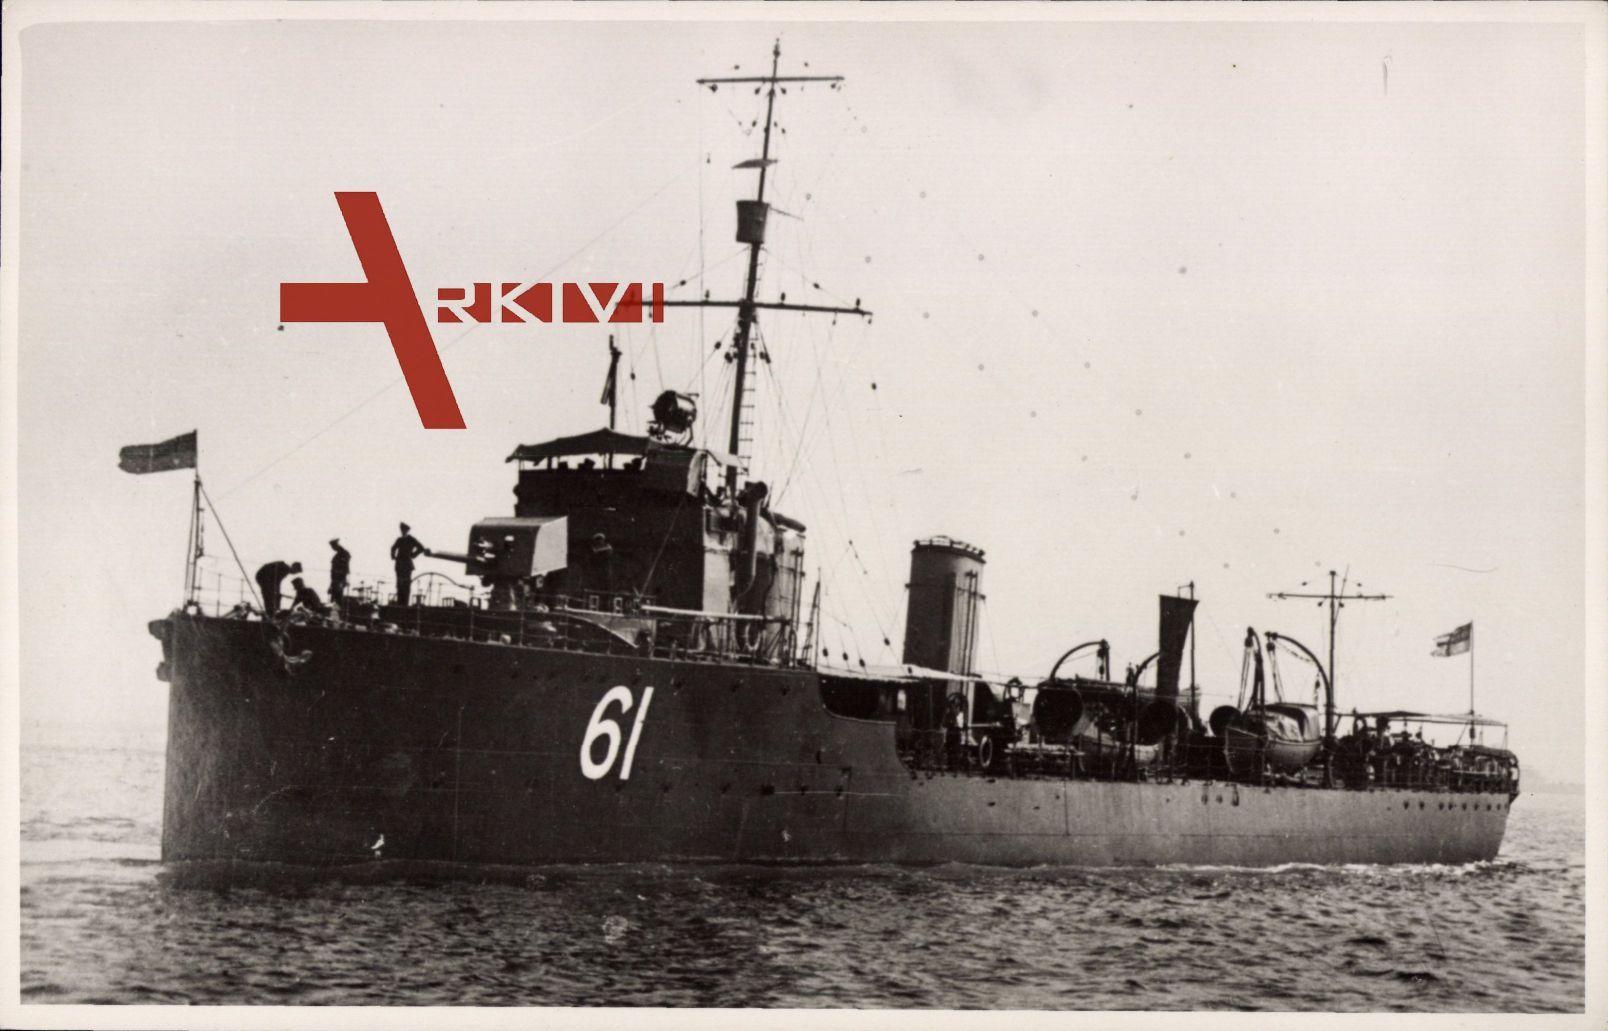 Australisches Kriegsschiff Swasa 61 auf hoher See